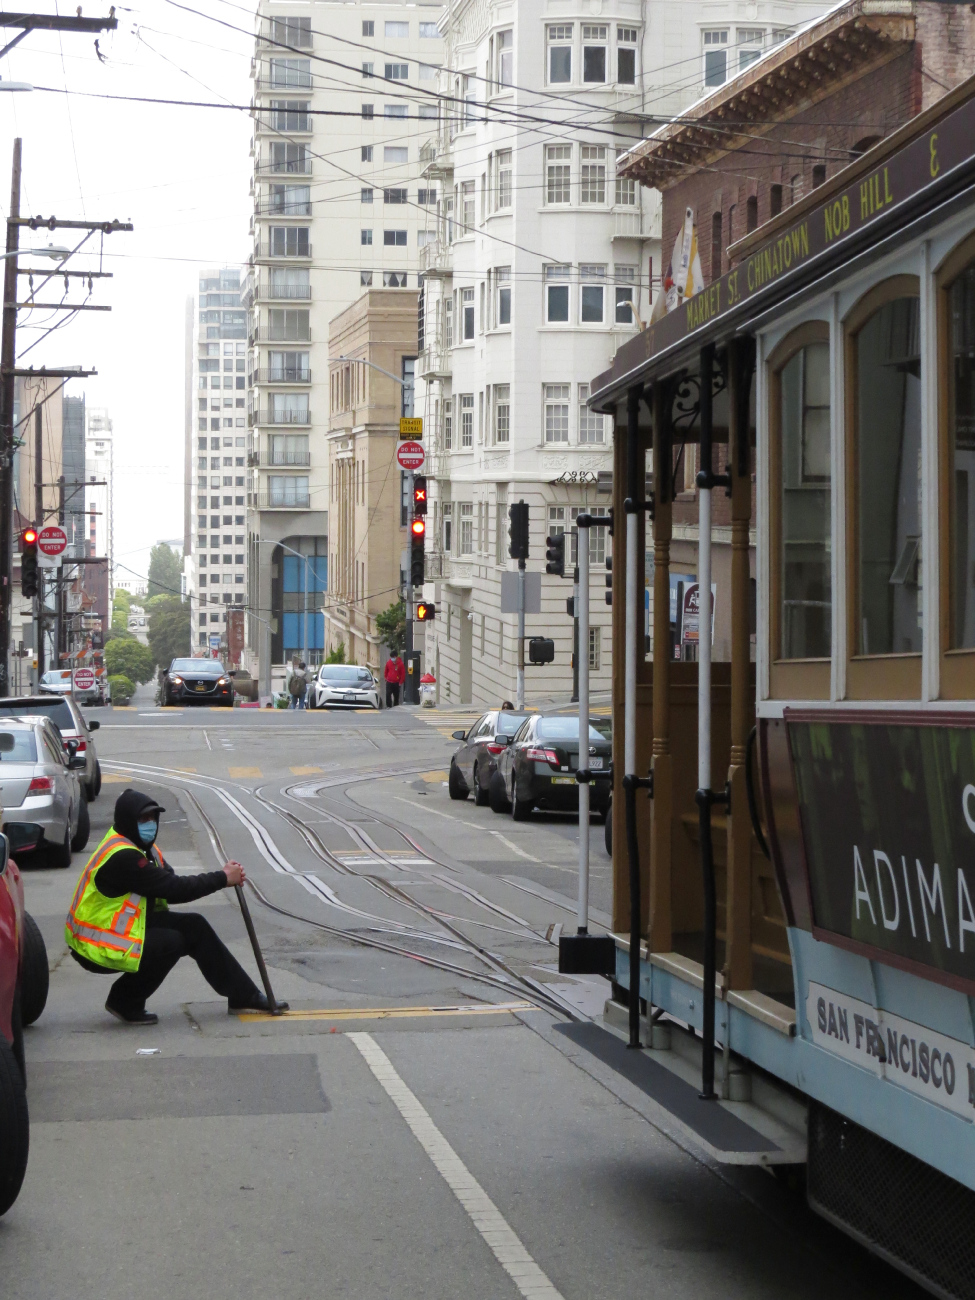 Сан-Франциско, область залива — Линии и инфраструктура кабельного трамвая